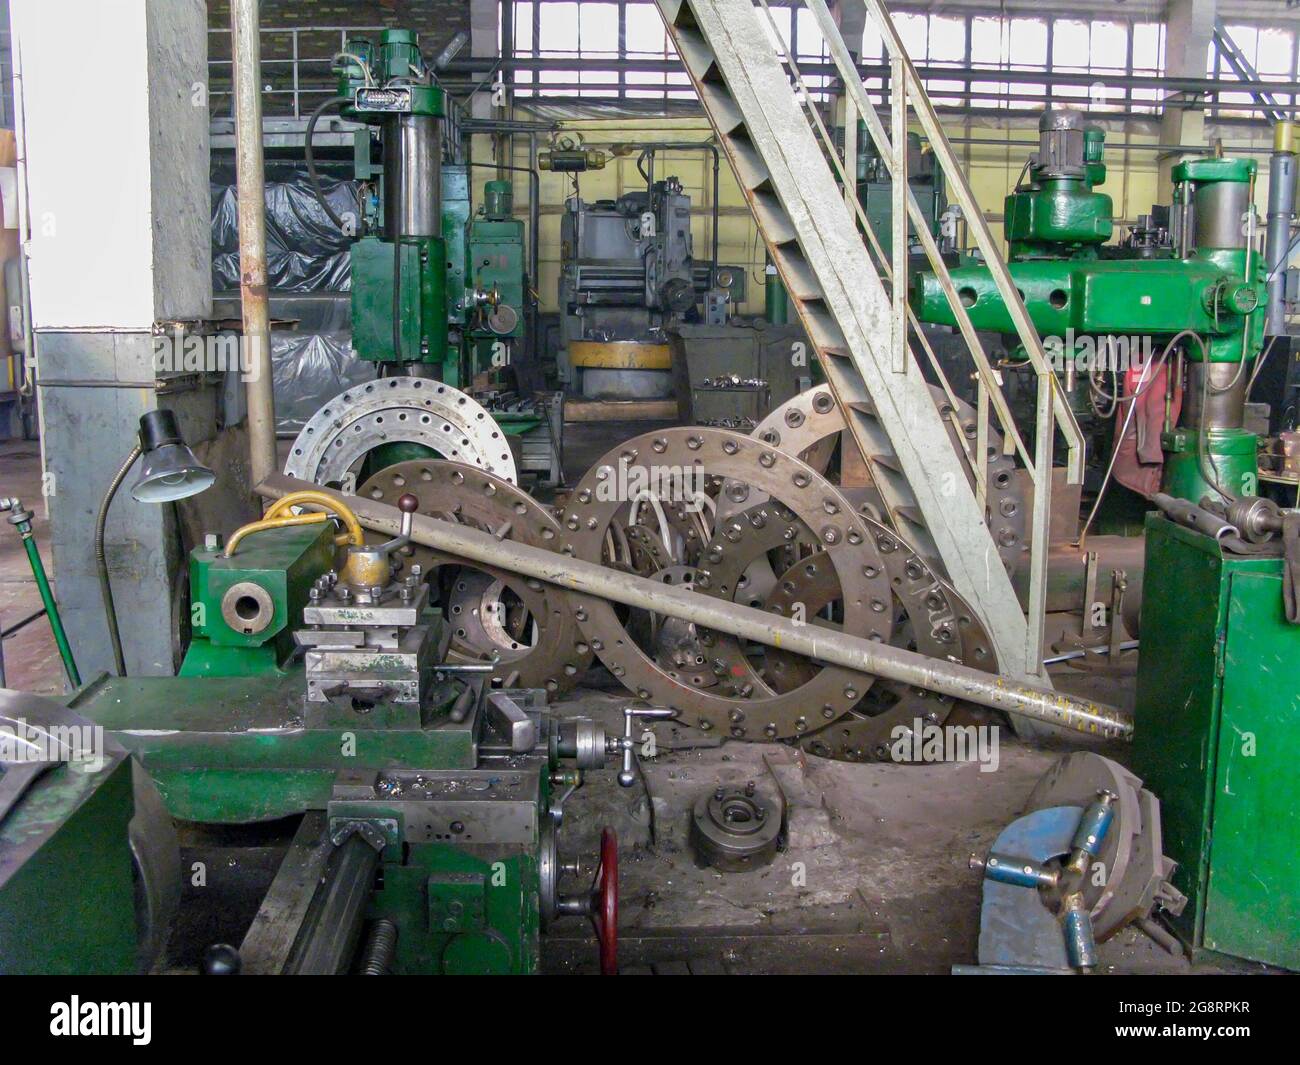 El piso de una fábrica de metalurgia del siglo pasado. El concepto de actualización de una flota de equipos o modernización de la producción en factorie Foto de stock